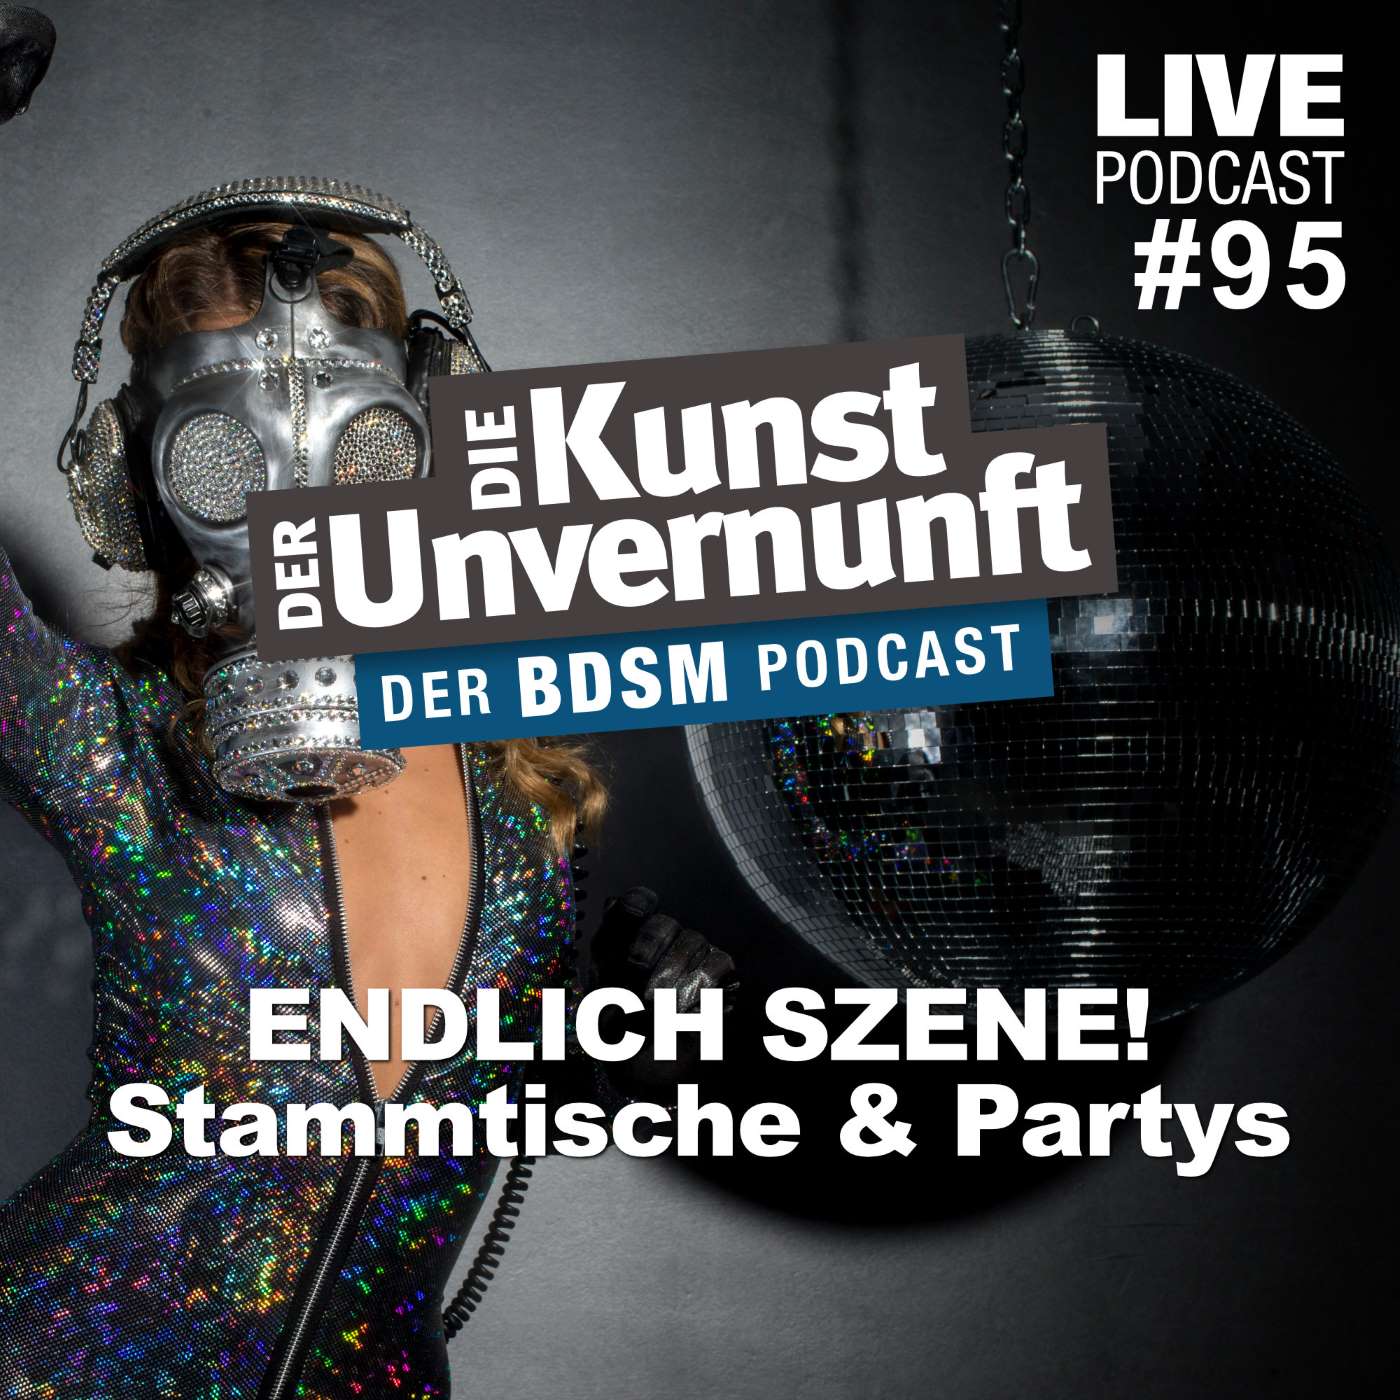 Unvernunft Live 19.05.22 - Endlich Szene! Stammtische, Partys